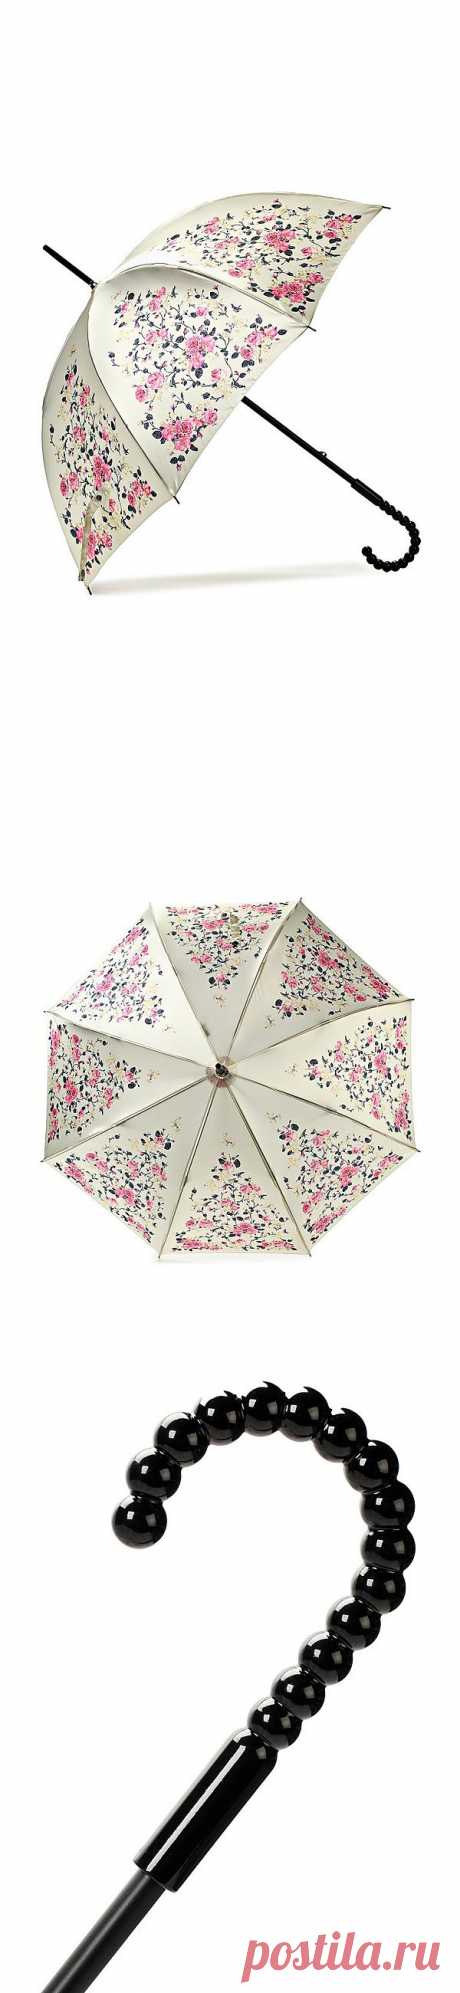 Просто супер-элегантный зонт был обнаружен на Lamoda. Нежный, красивый и недорогой! 
Как быть, если хочется ВСЁ купить?:)
Стоит 1420 рублей